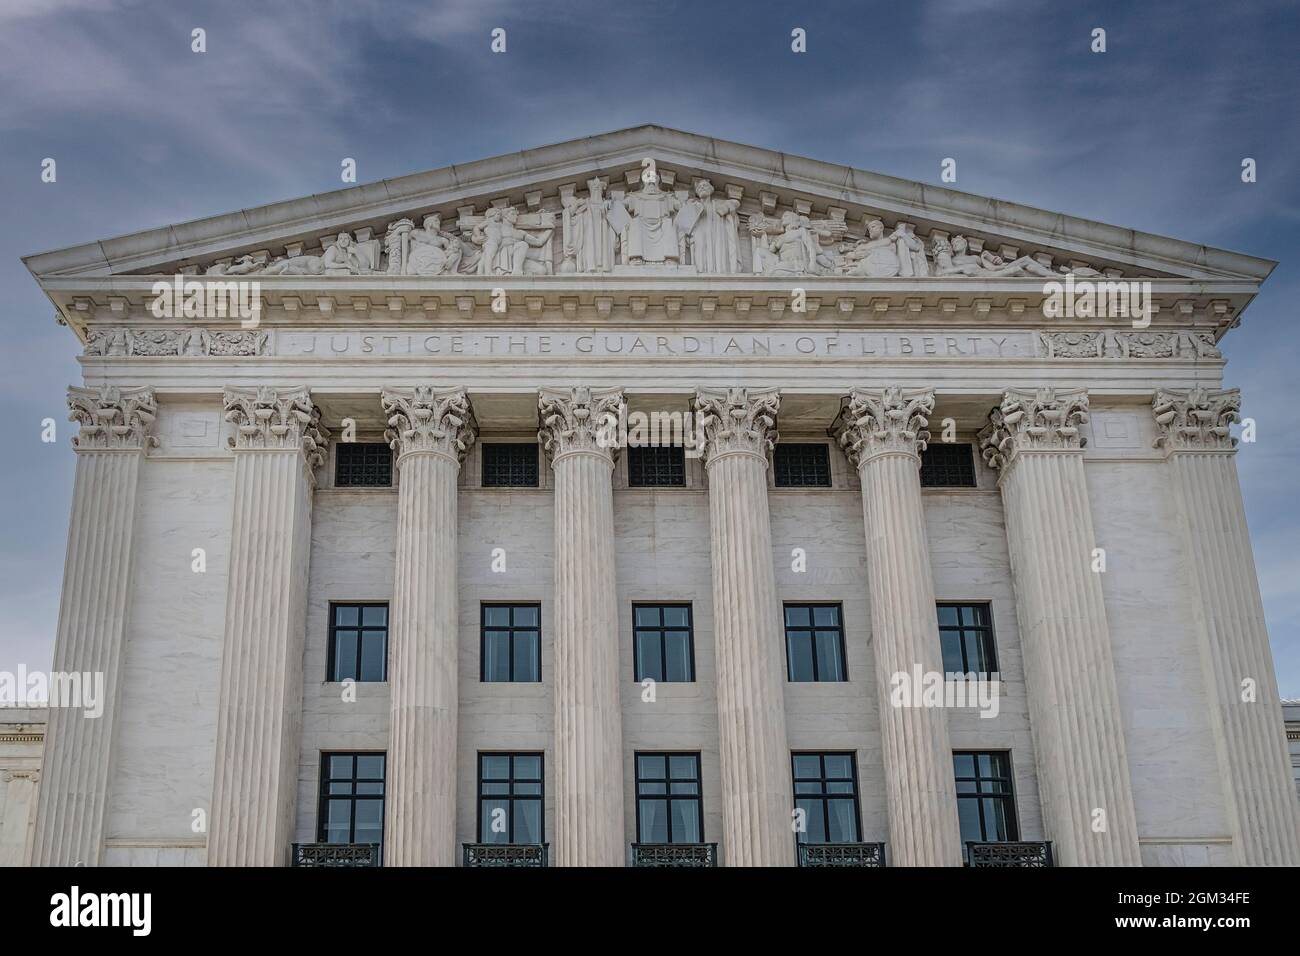 Justice The Guardian of Liberty SCOTUS - Pediment et colonnes sur le côté est de la Cour suprême des États-Unis à Washington DC. Cette image Banque D'Images